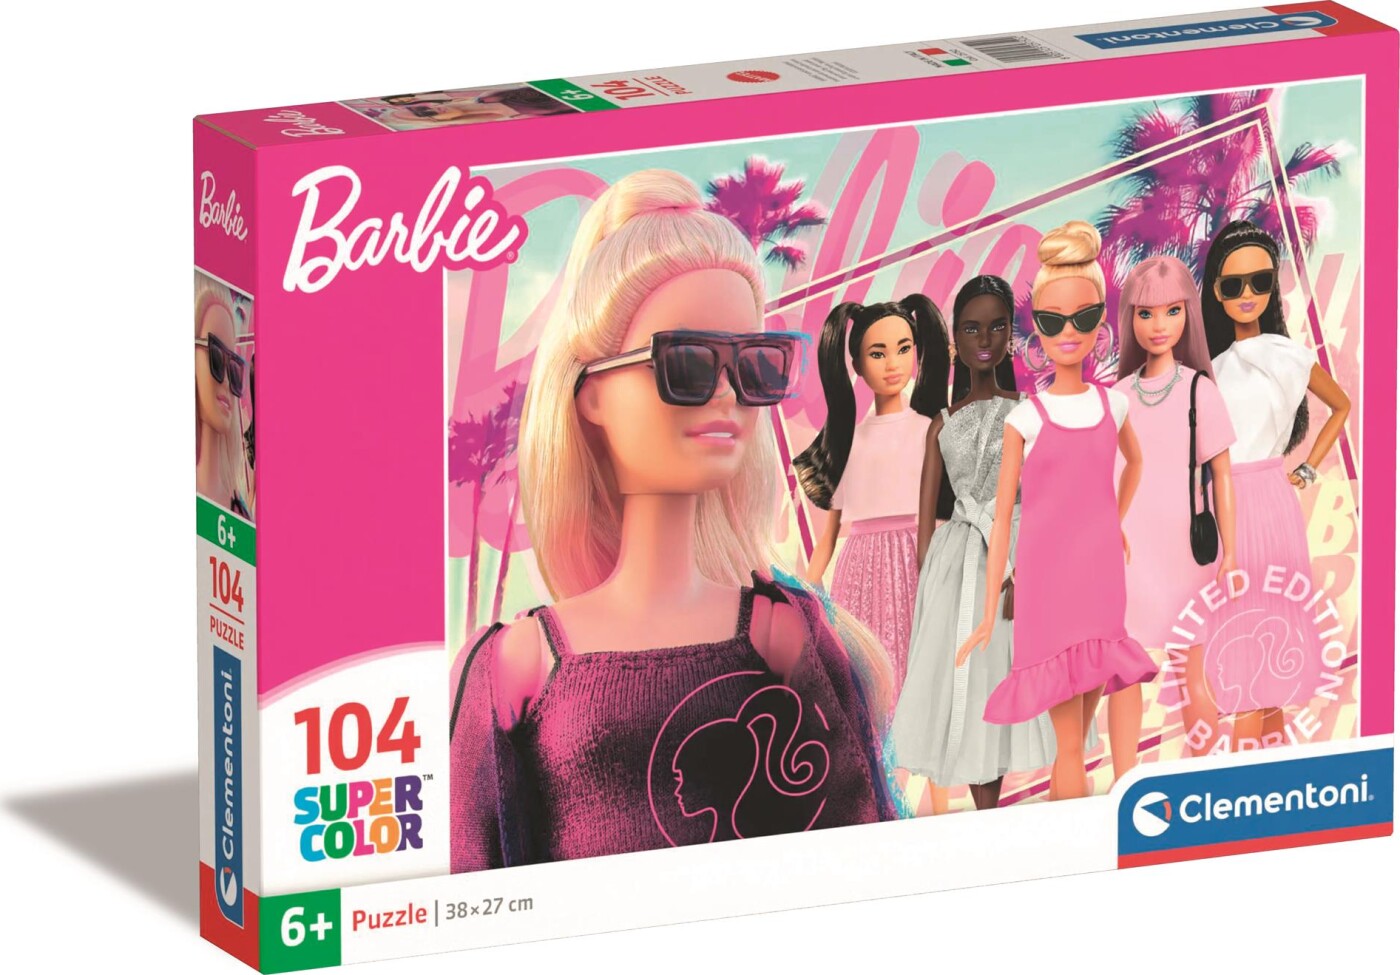 Billede af Barbie Puslespil - Super Color - 104 Brikker - Clementoni hos Gucca.dk